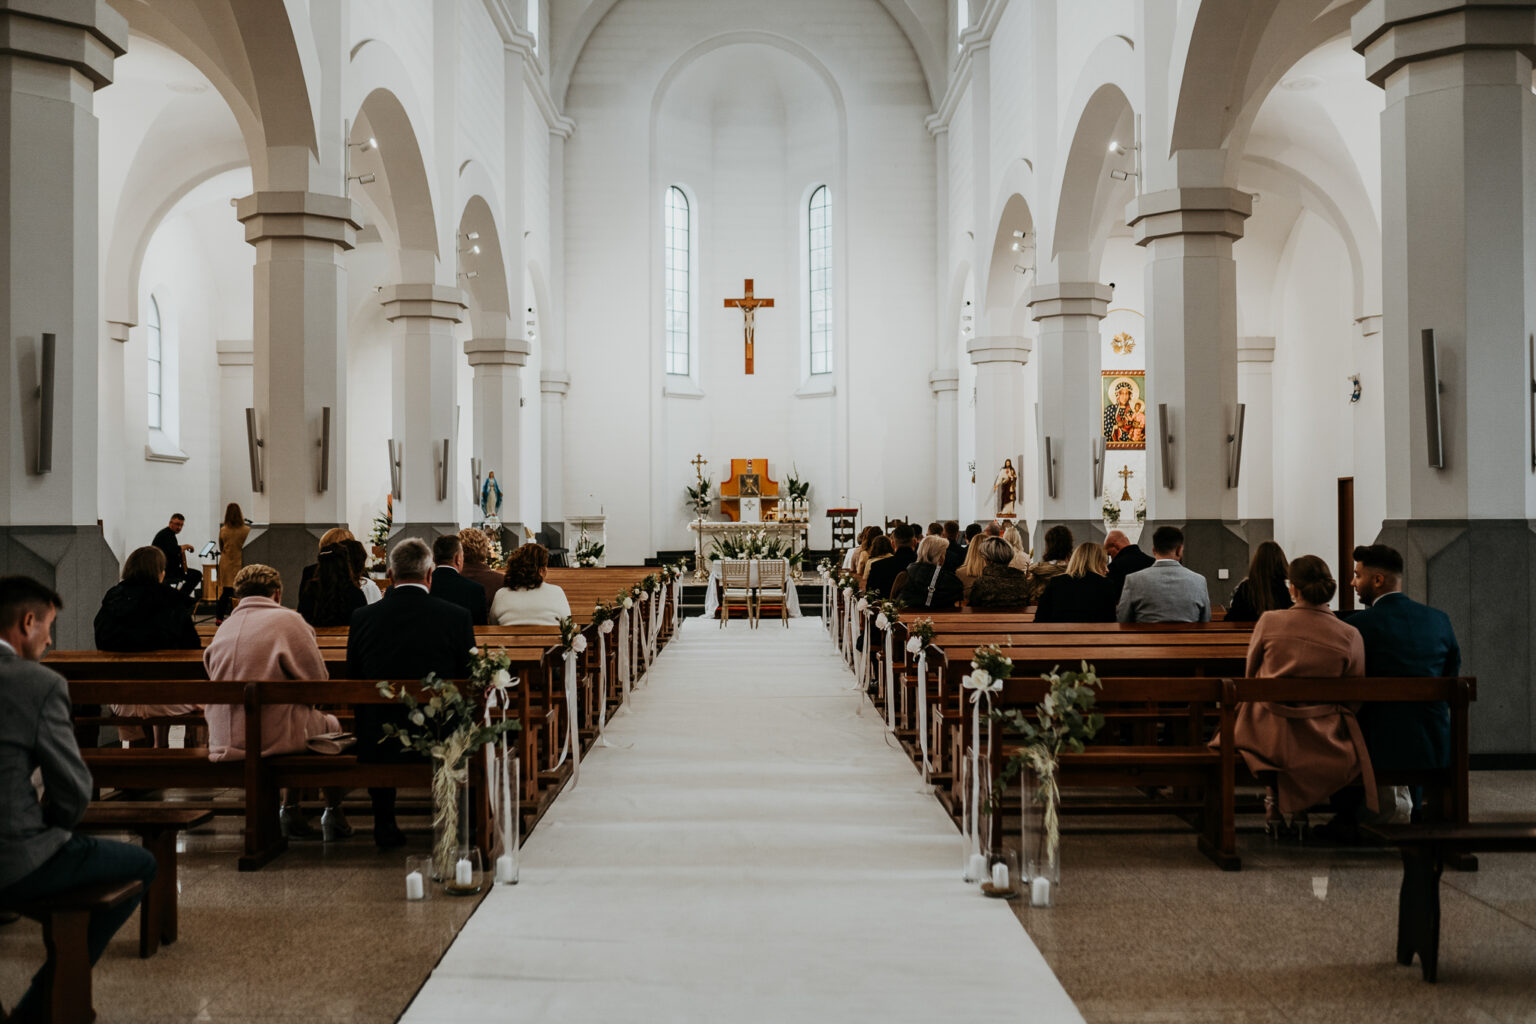 ślub kościelny